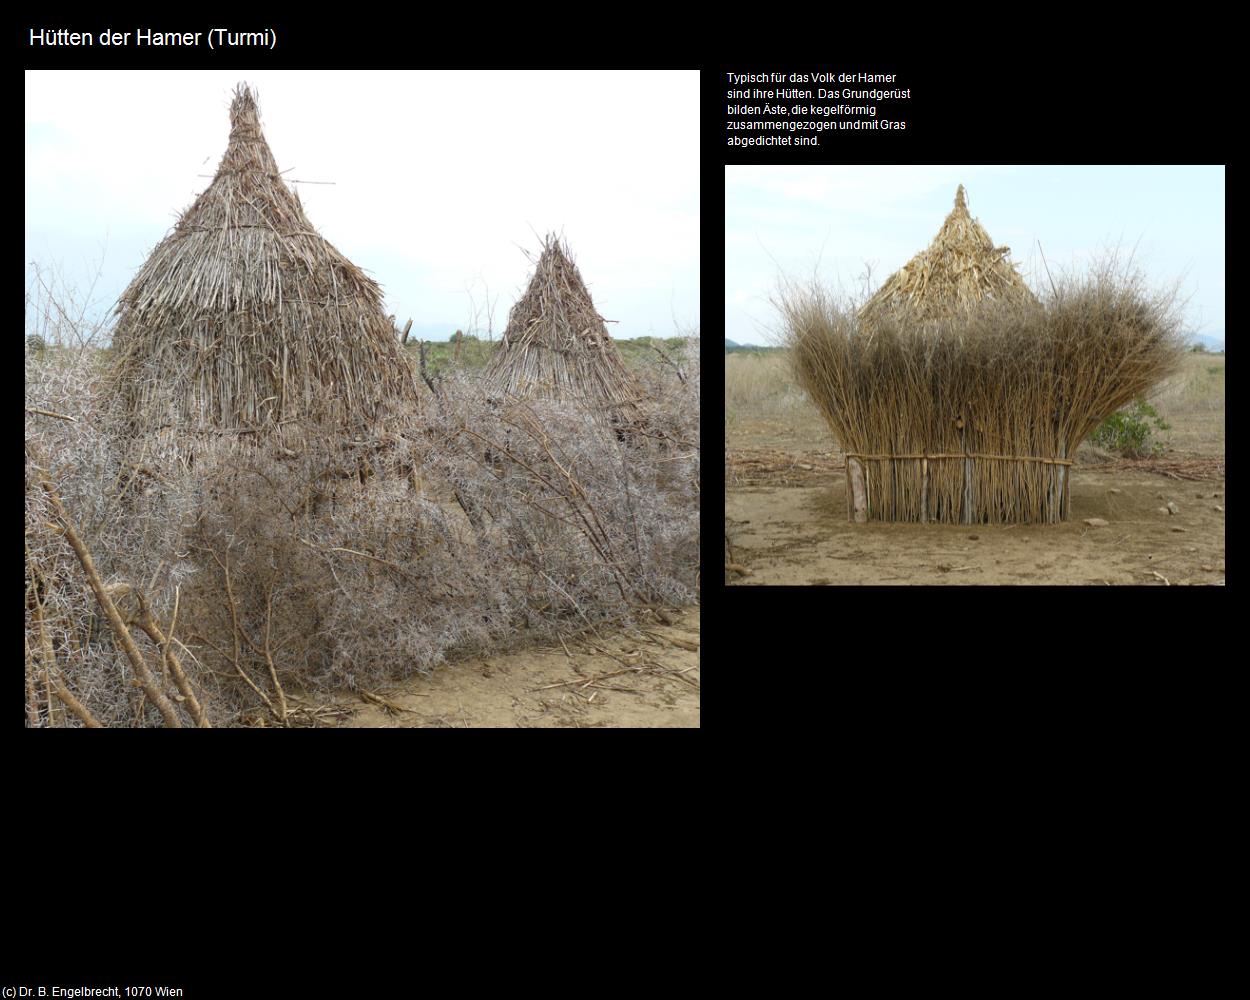 Hütten der Hamer  (Turmi) in Äthiopien